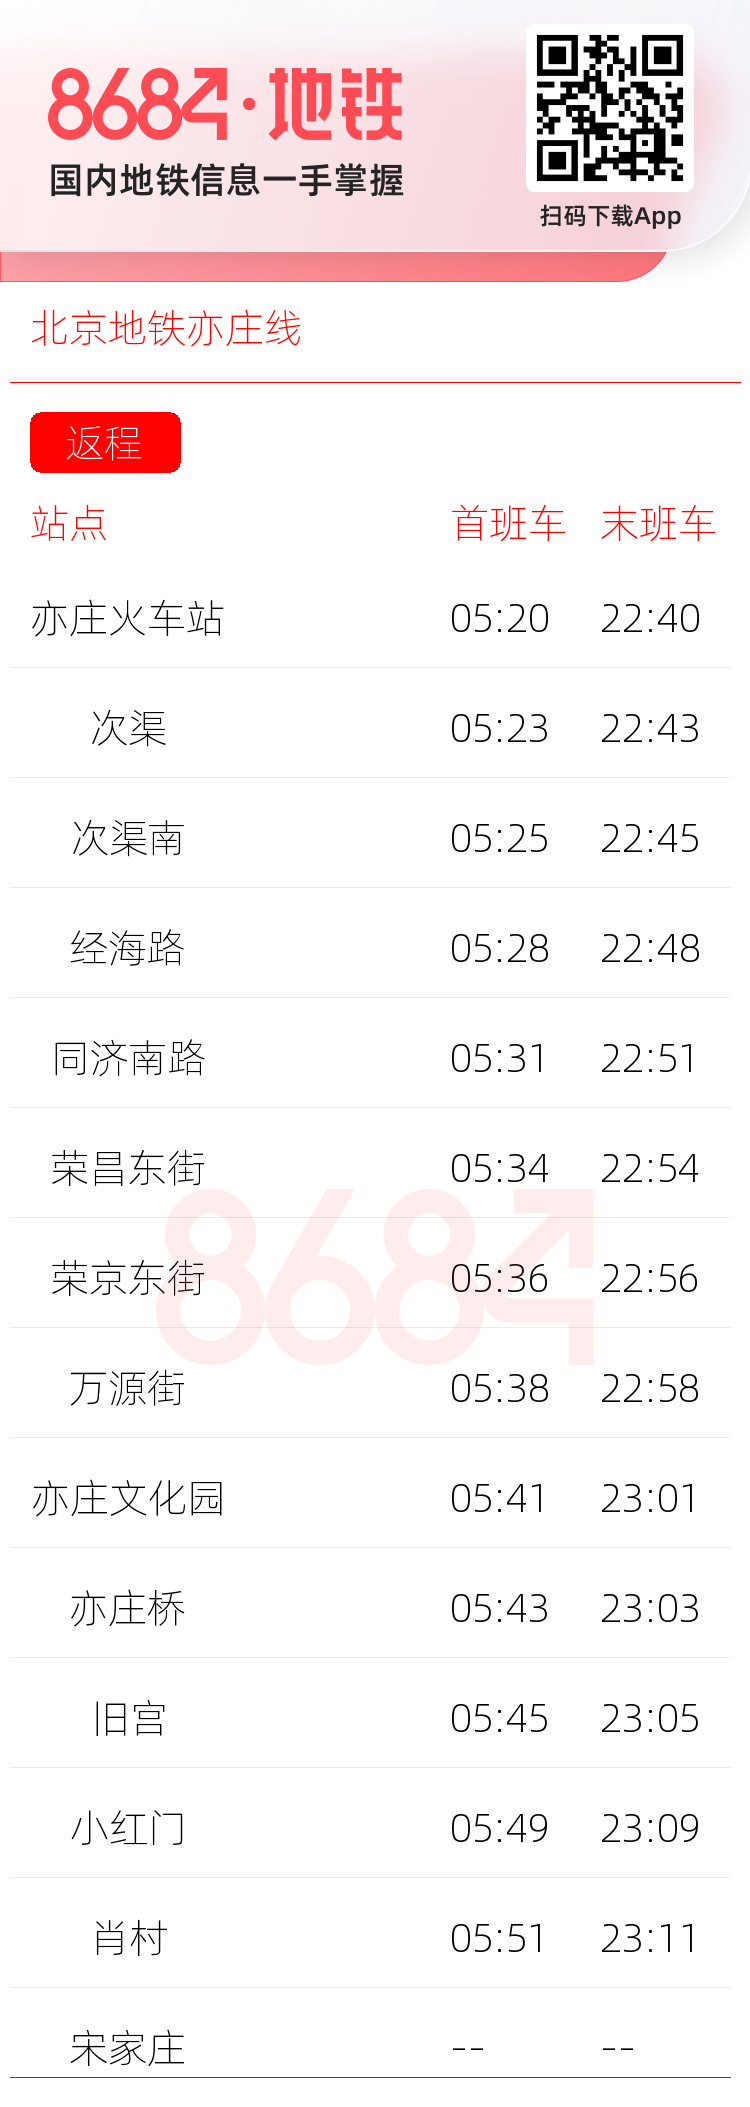 北京地铁亦庄线运营时间表